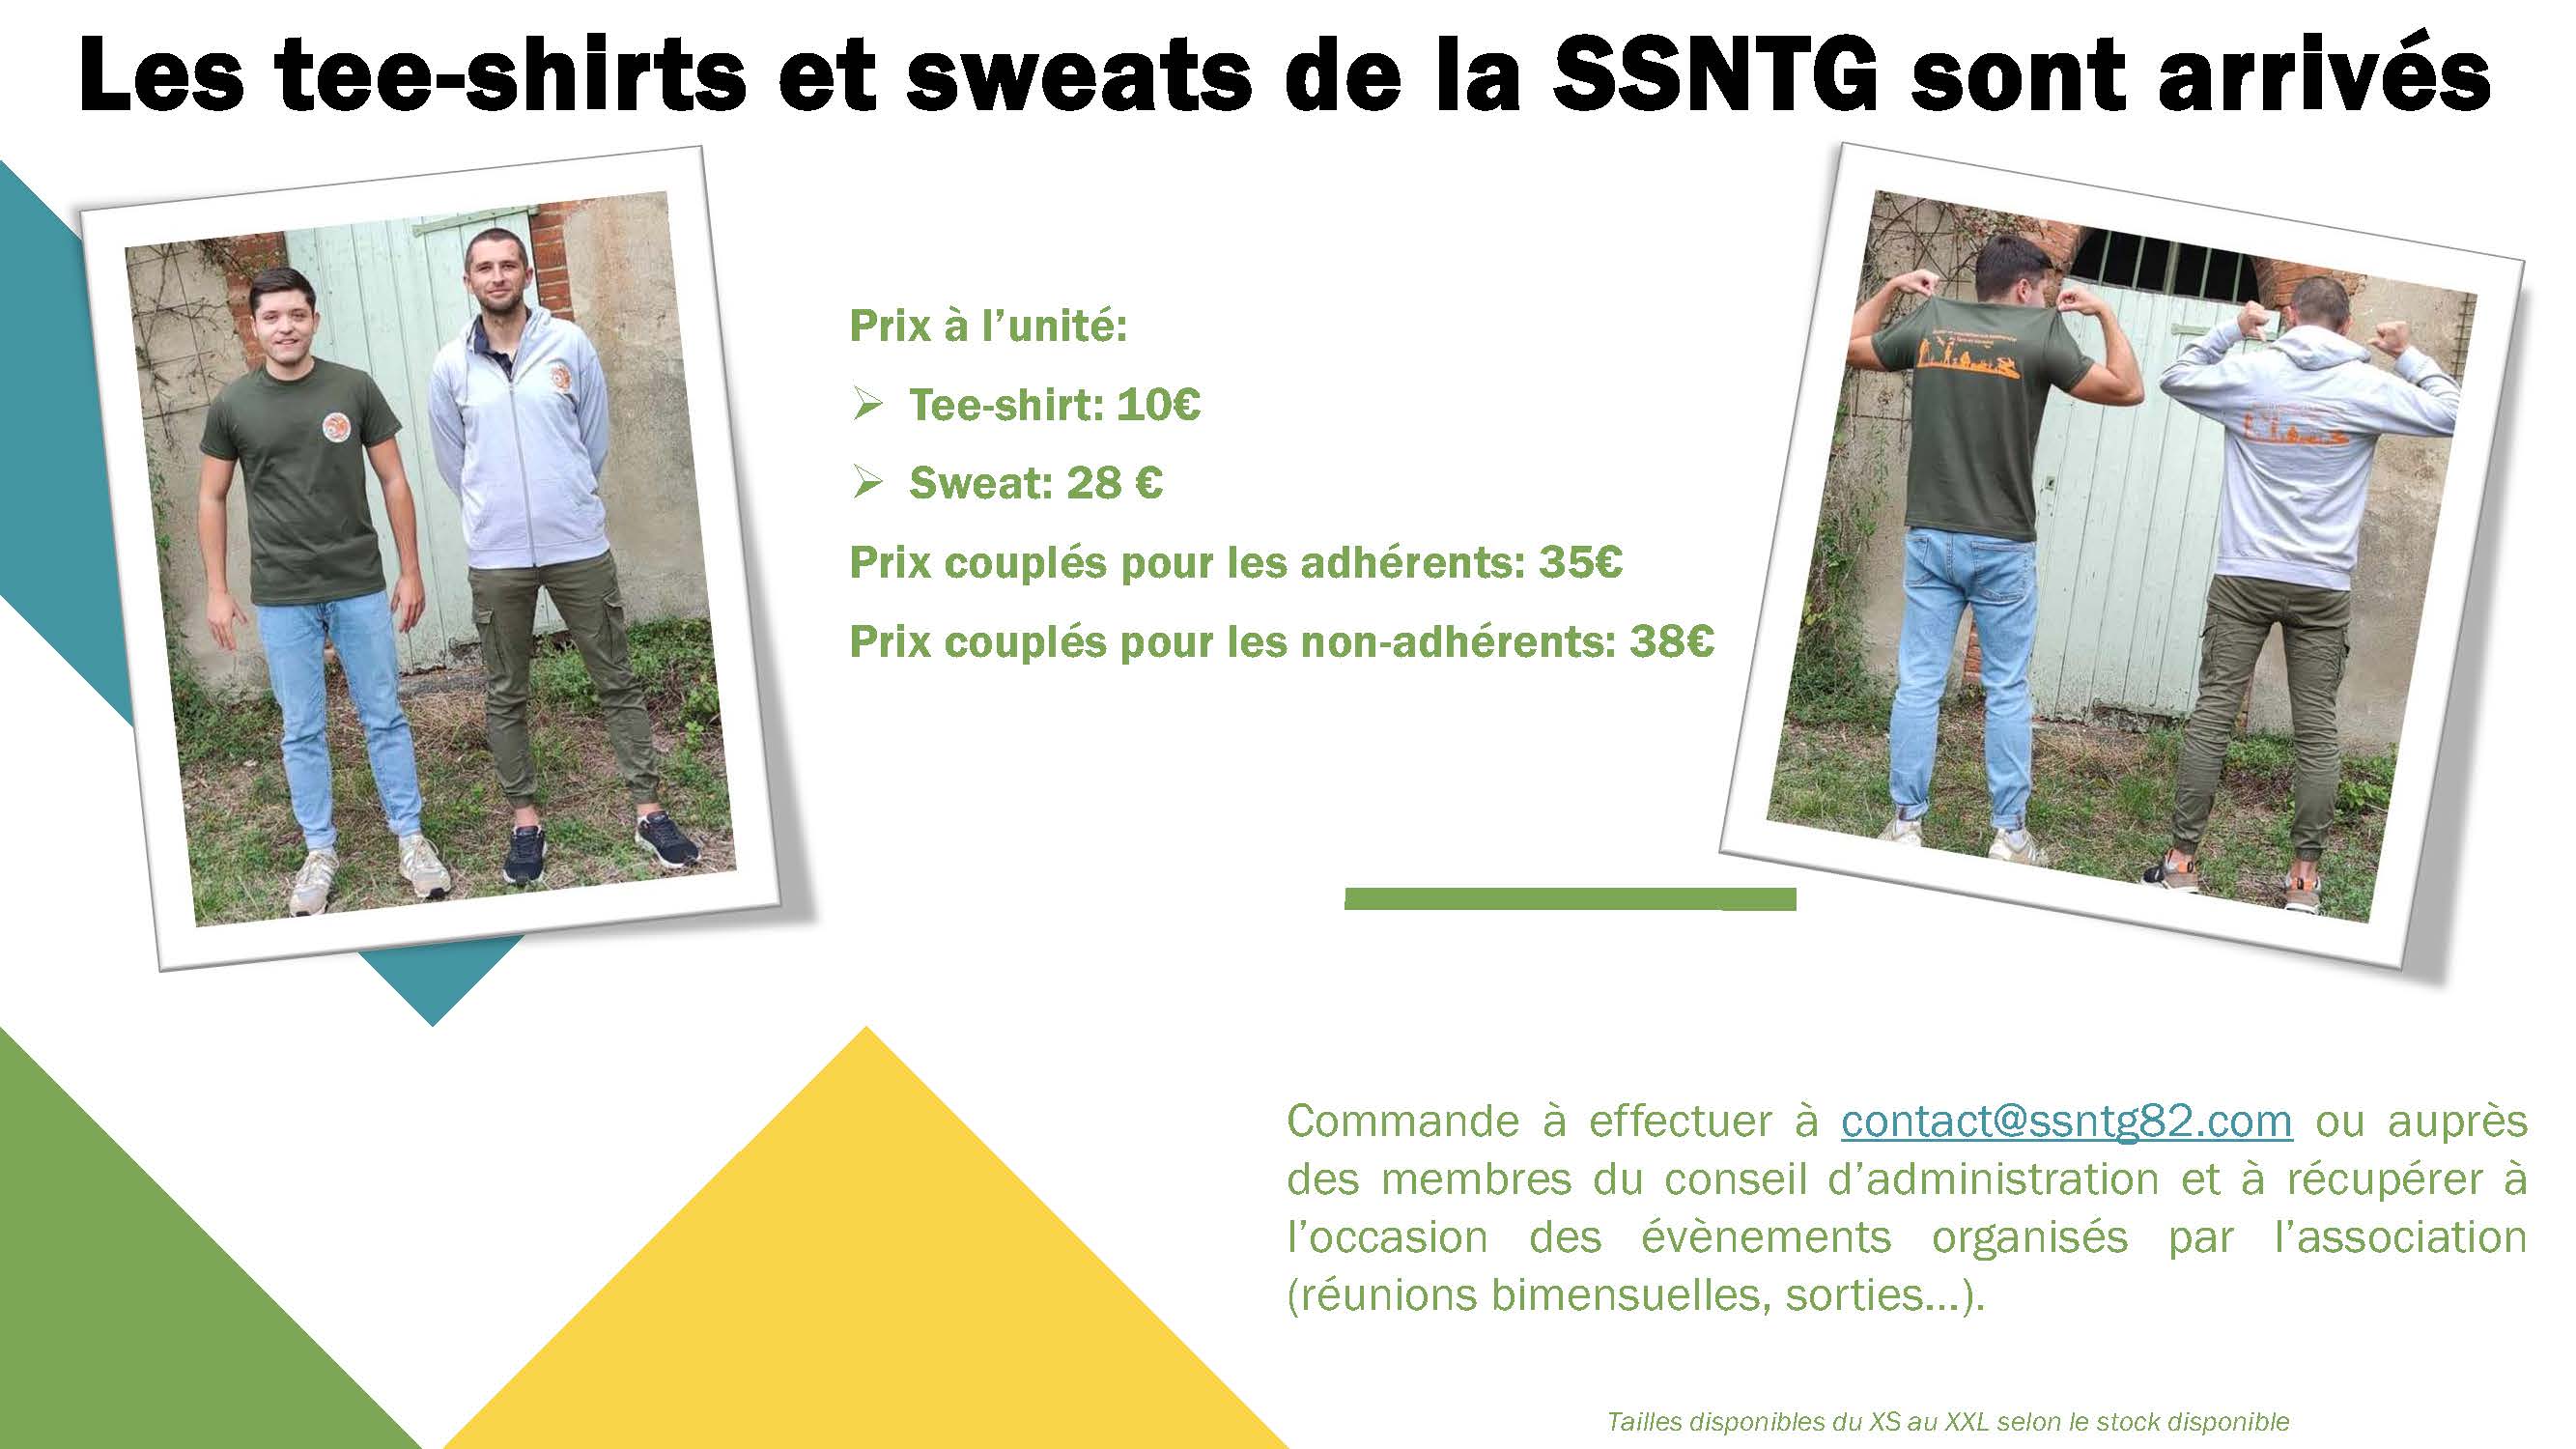 Bon de commande SSNTG teeshirt et sweat Page 1